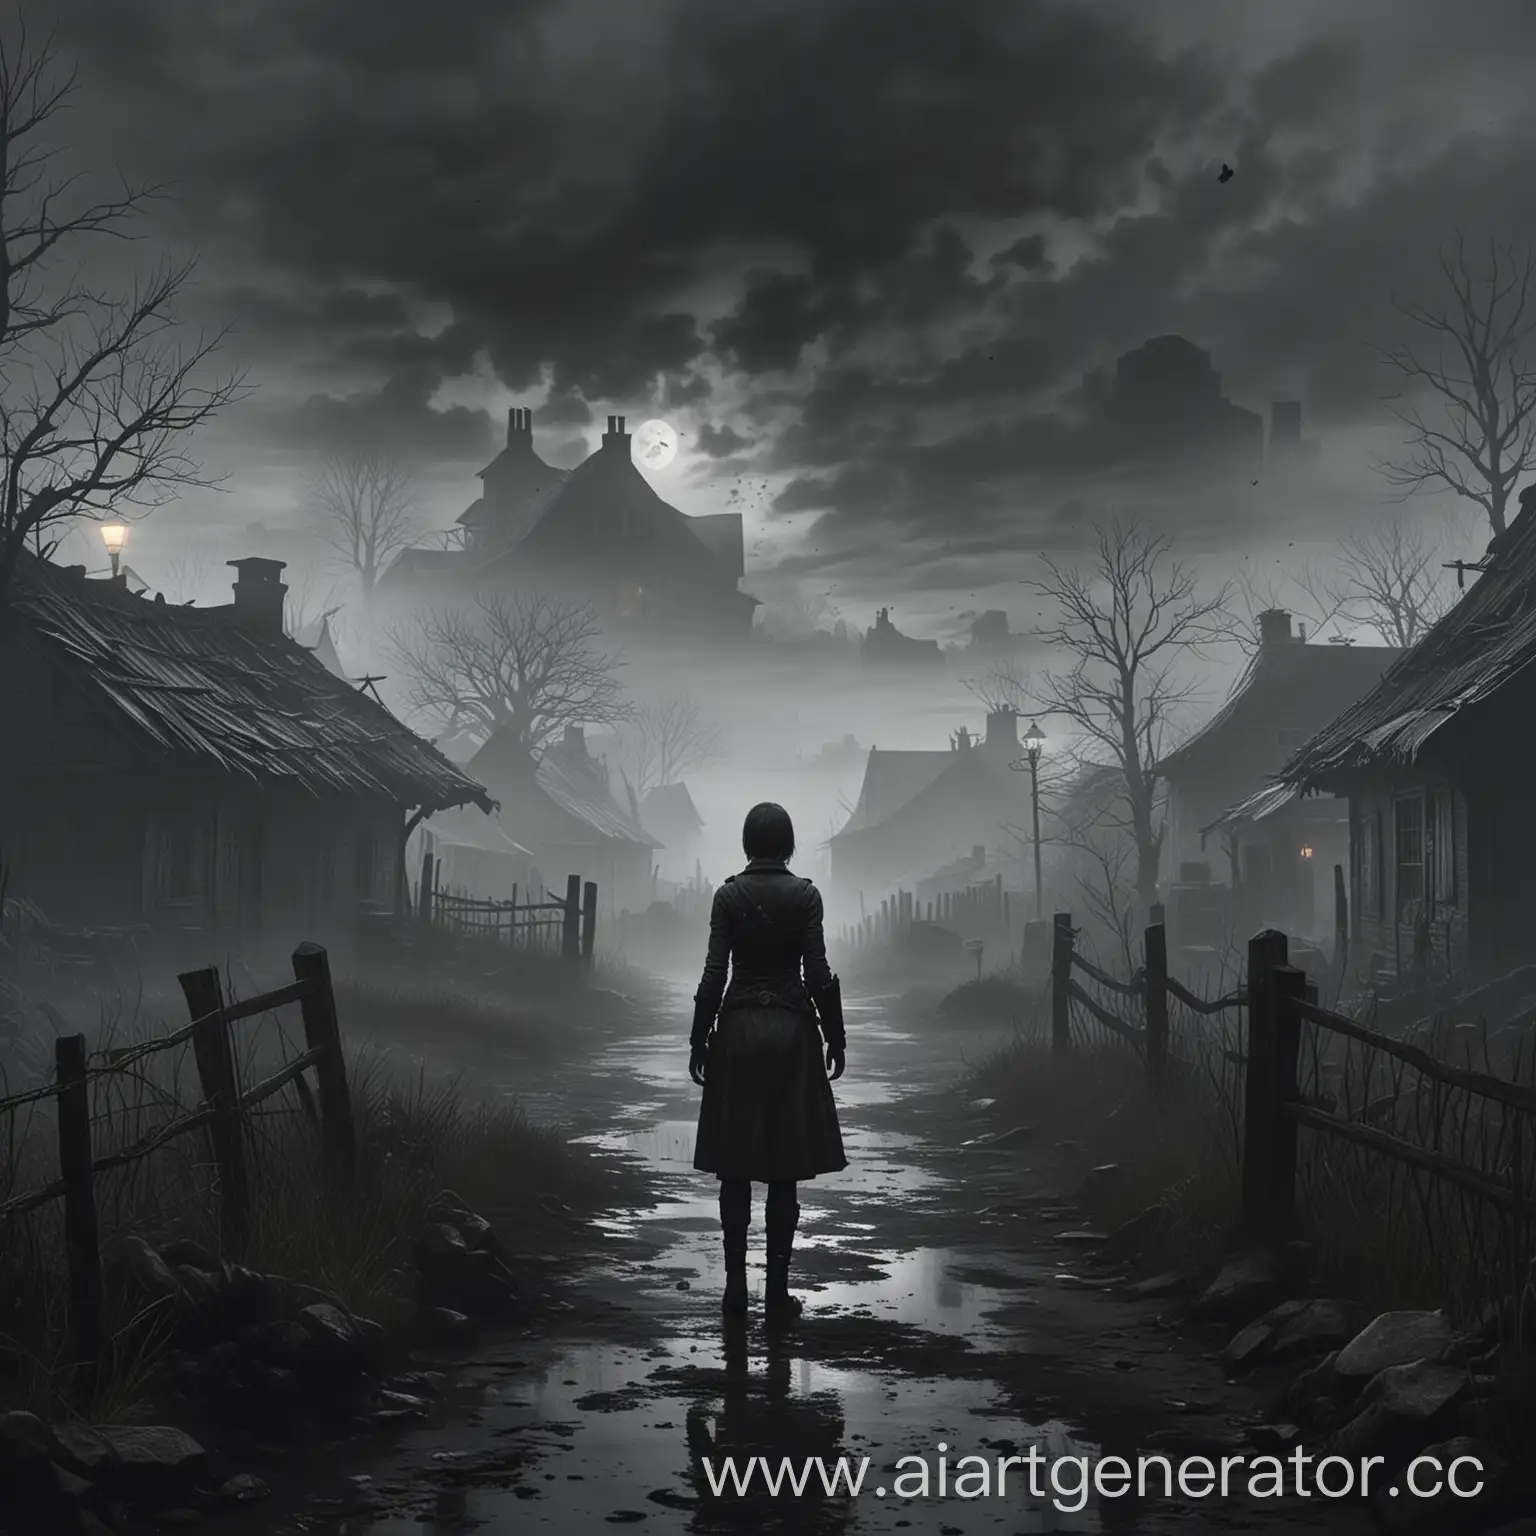 Игра в стиле Resident Evil 4, мрачная деревня, пасмурная погода, туман сквозь который видно силует человека, женщина стоит посреди мрачной местности